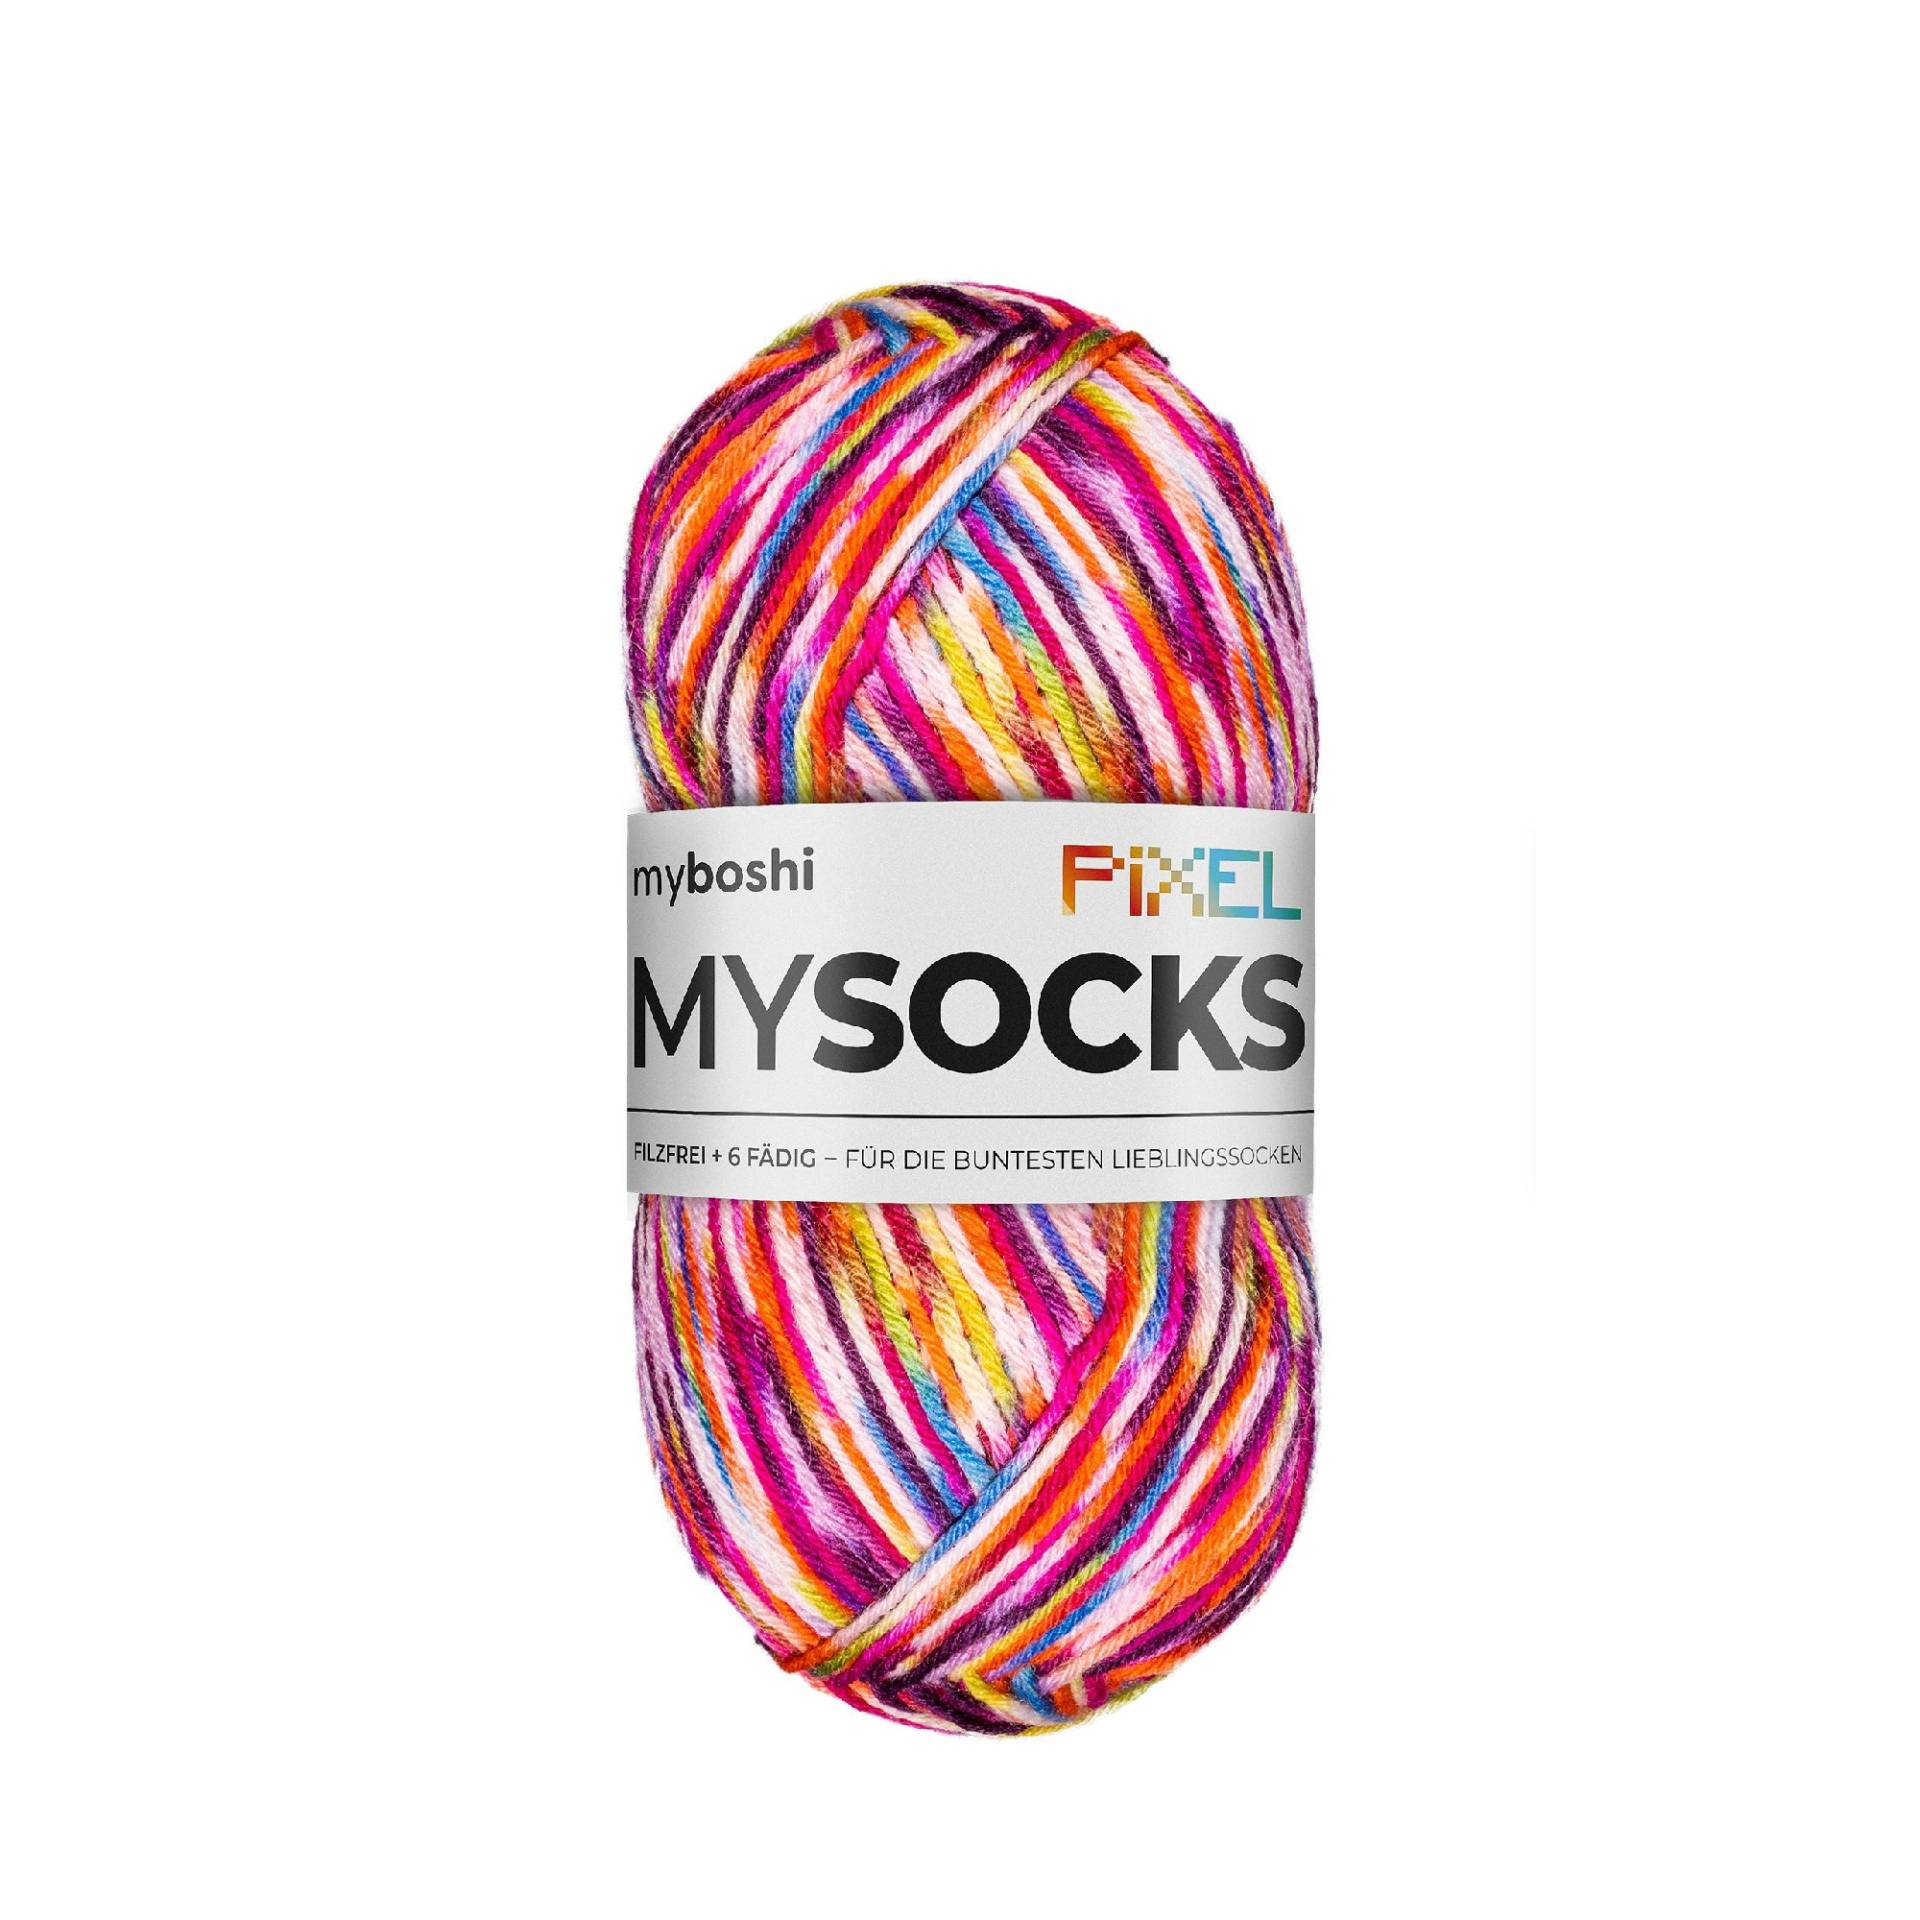 myboshi mysocks Pixel 6-fädige Sockenwolle Nova 150g, violett-orange von Stoffe Hemmers